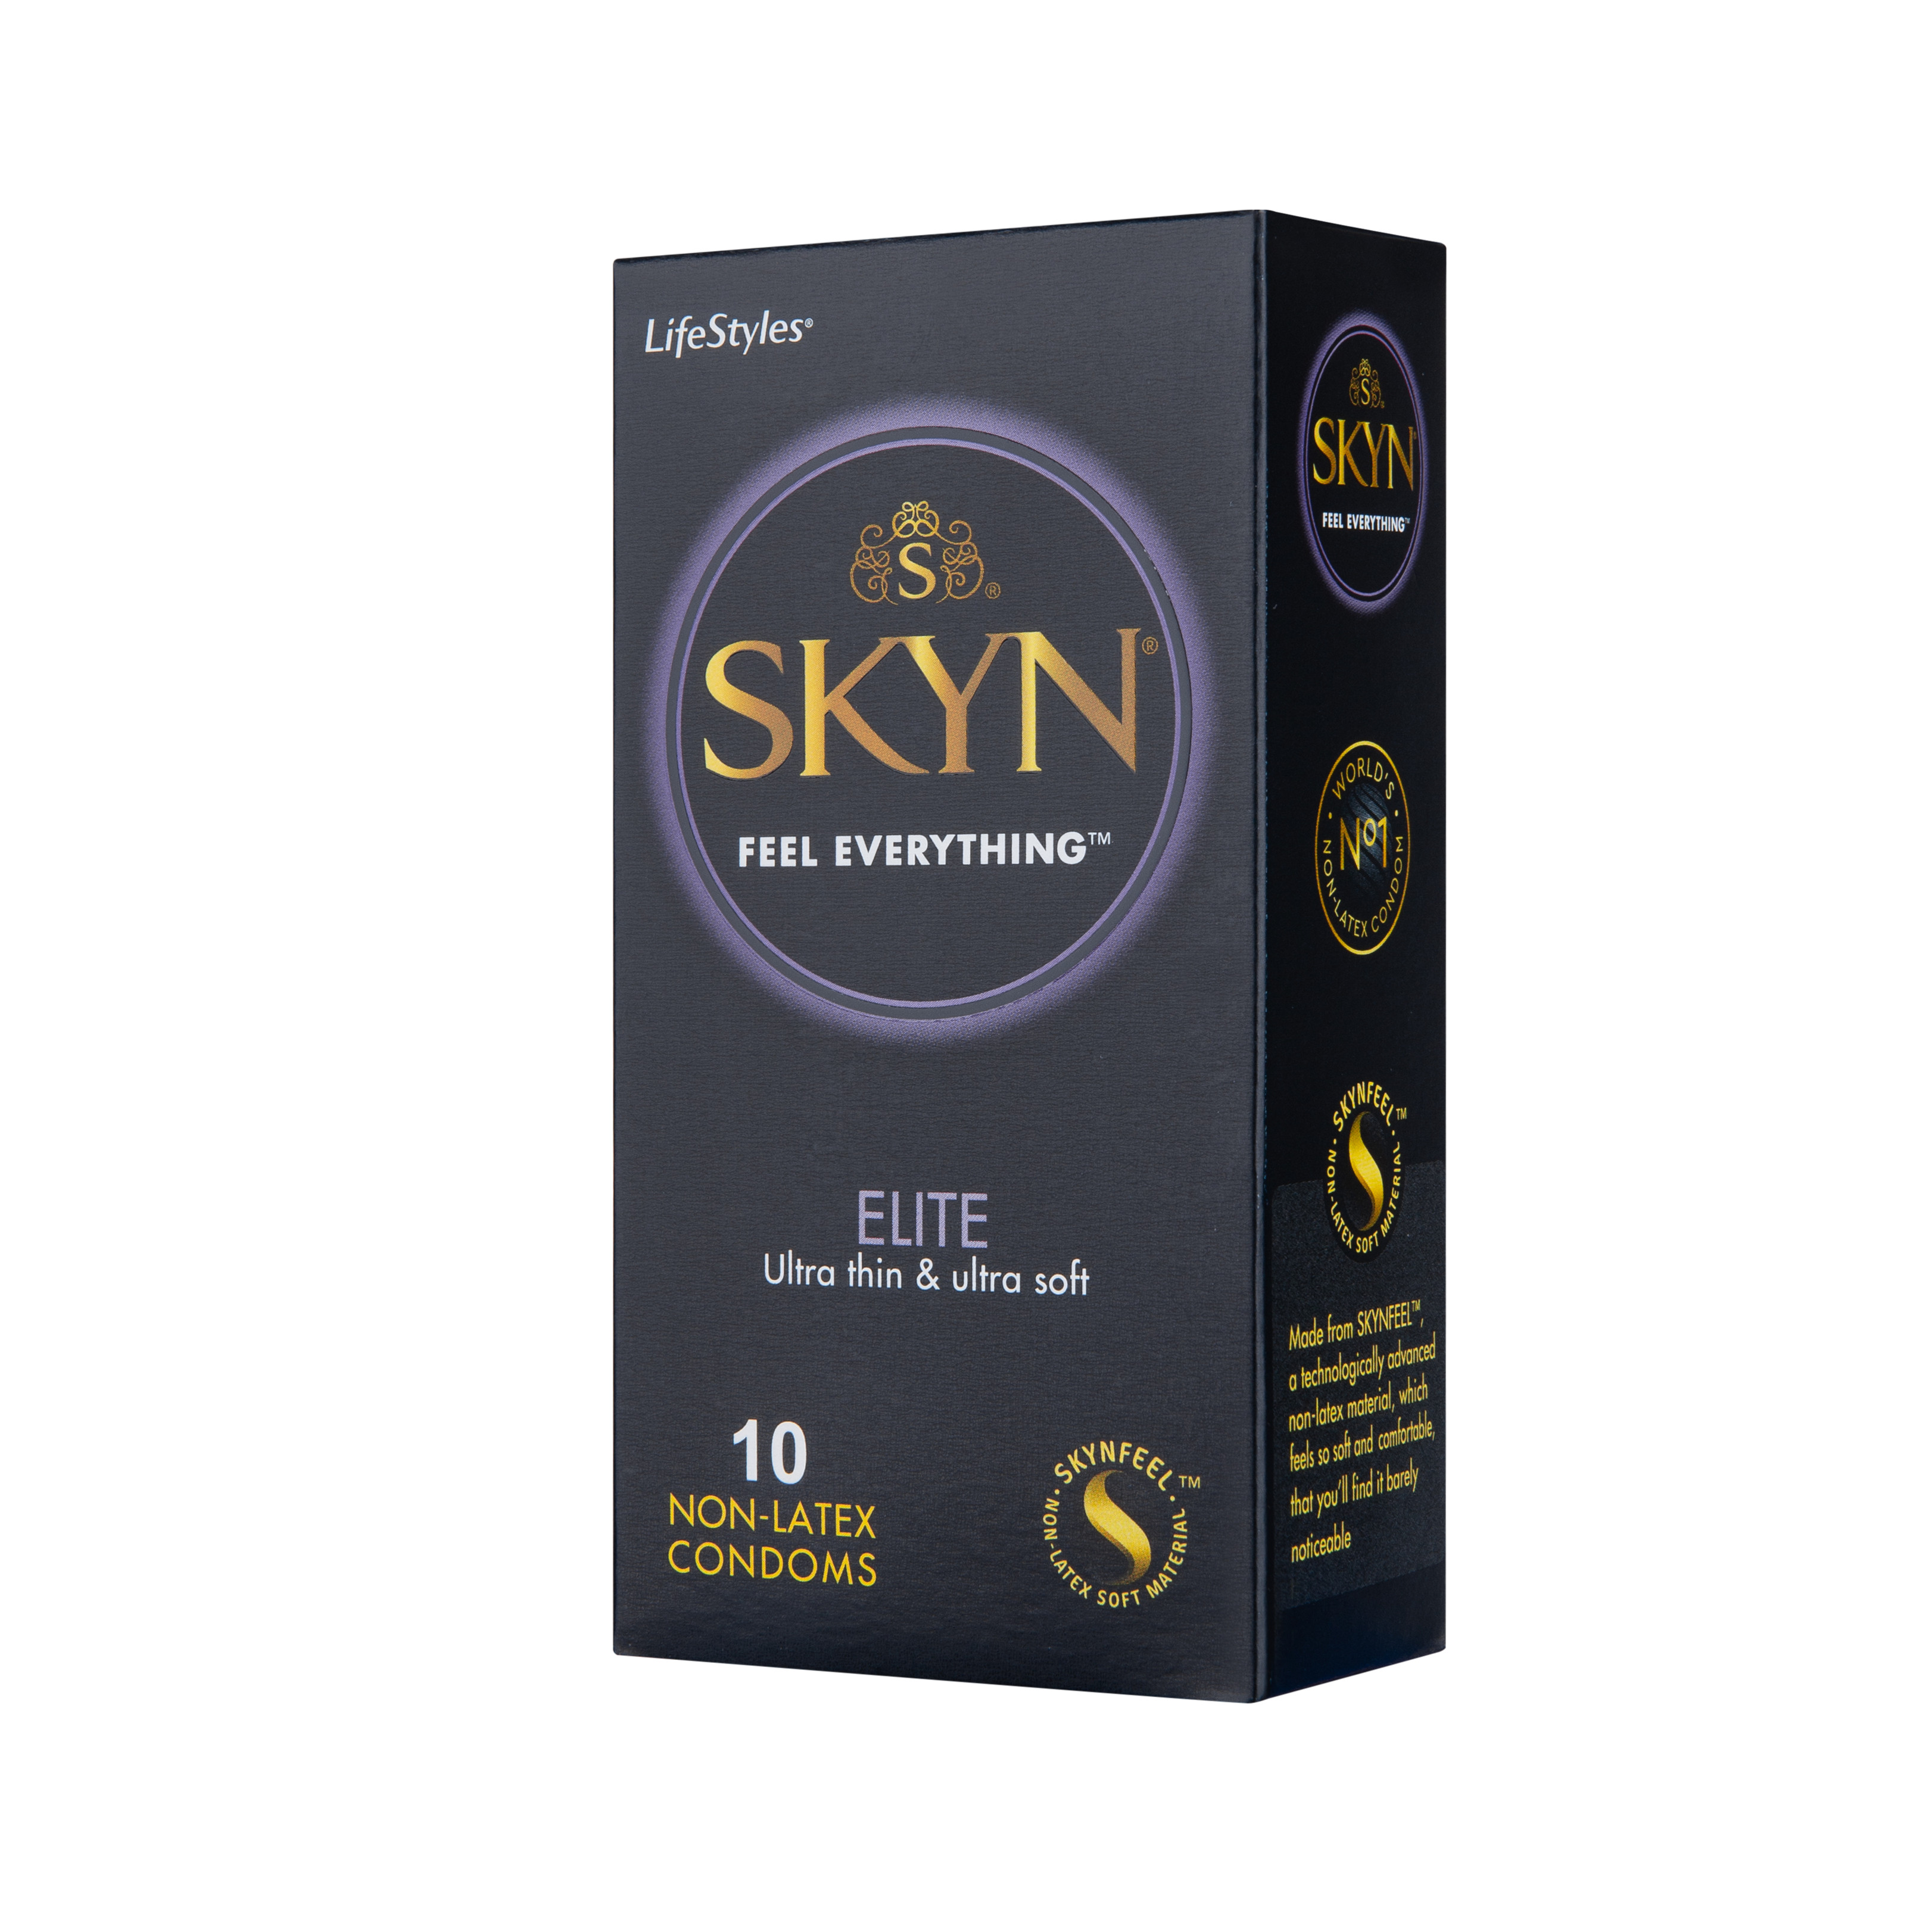 Bao cao su LifeStyles SKYN Elite Non-latex cao cấp siêu mỏng siêu mềm cảm giác chân thật không gây dị ứng không mùi cao su size 53mm - Hộp 10 bao - Xuất xứ Úc ( Hàng Chính Hãng )